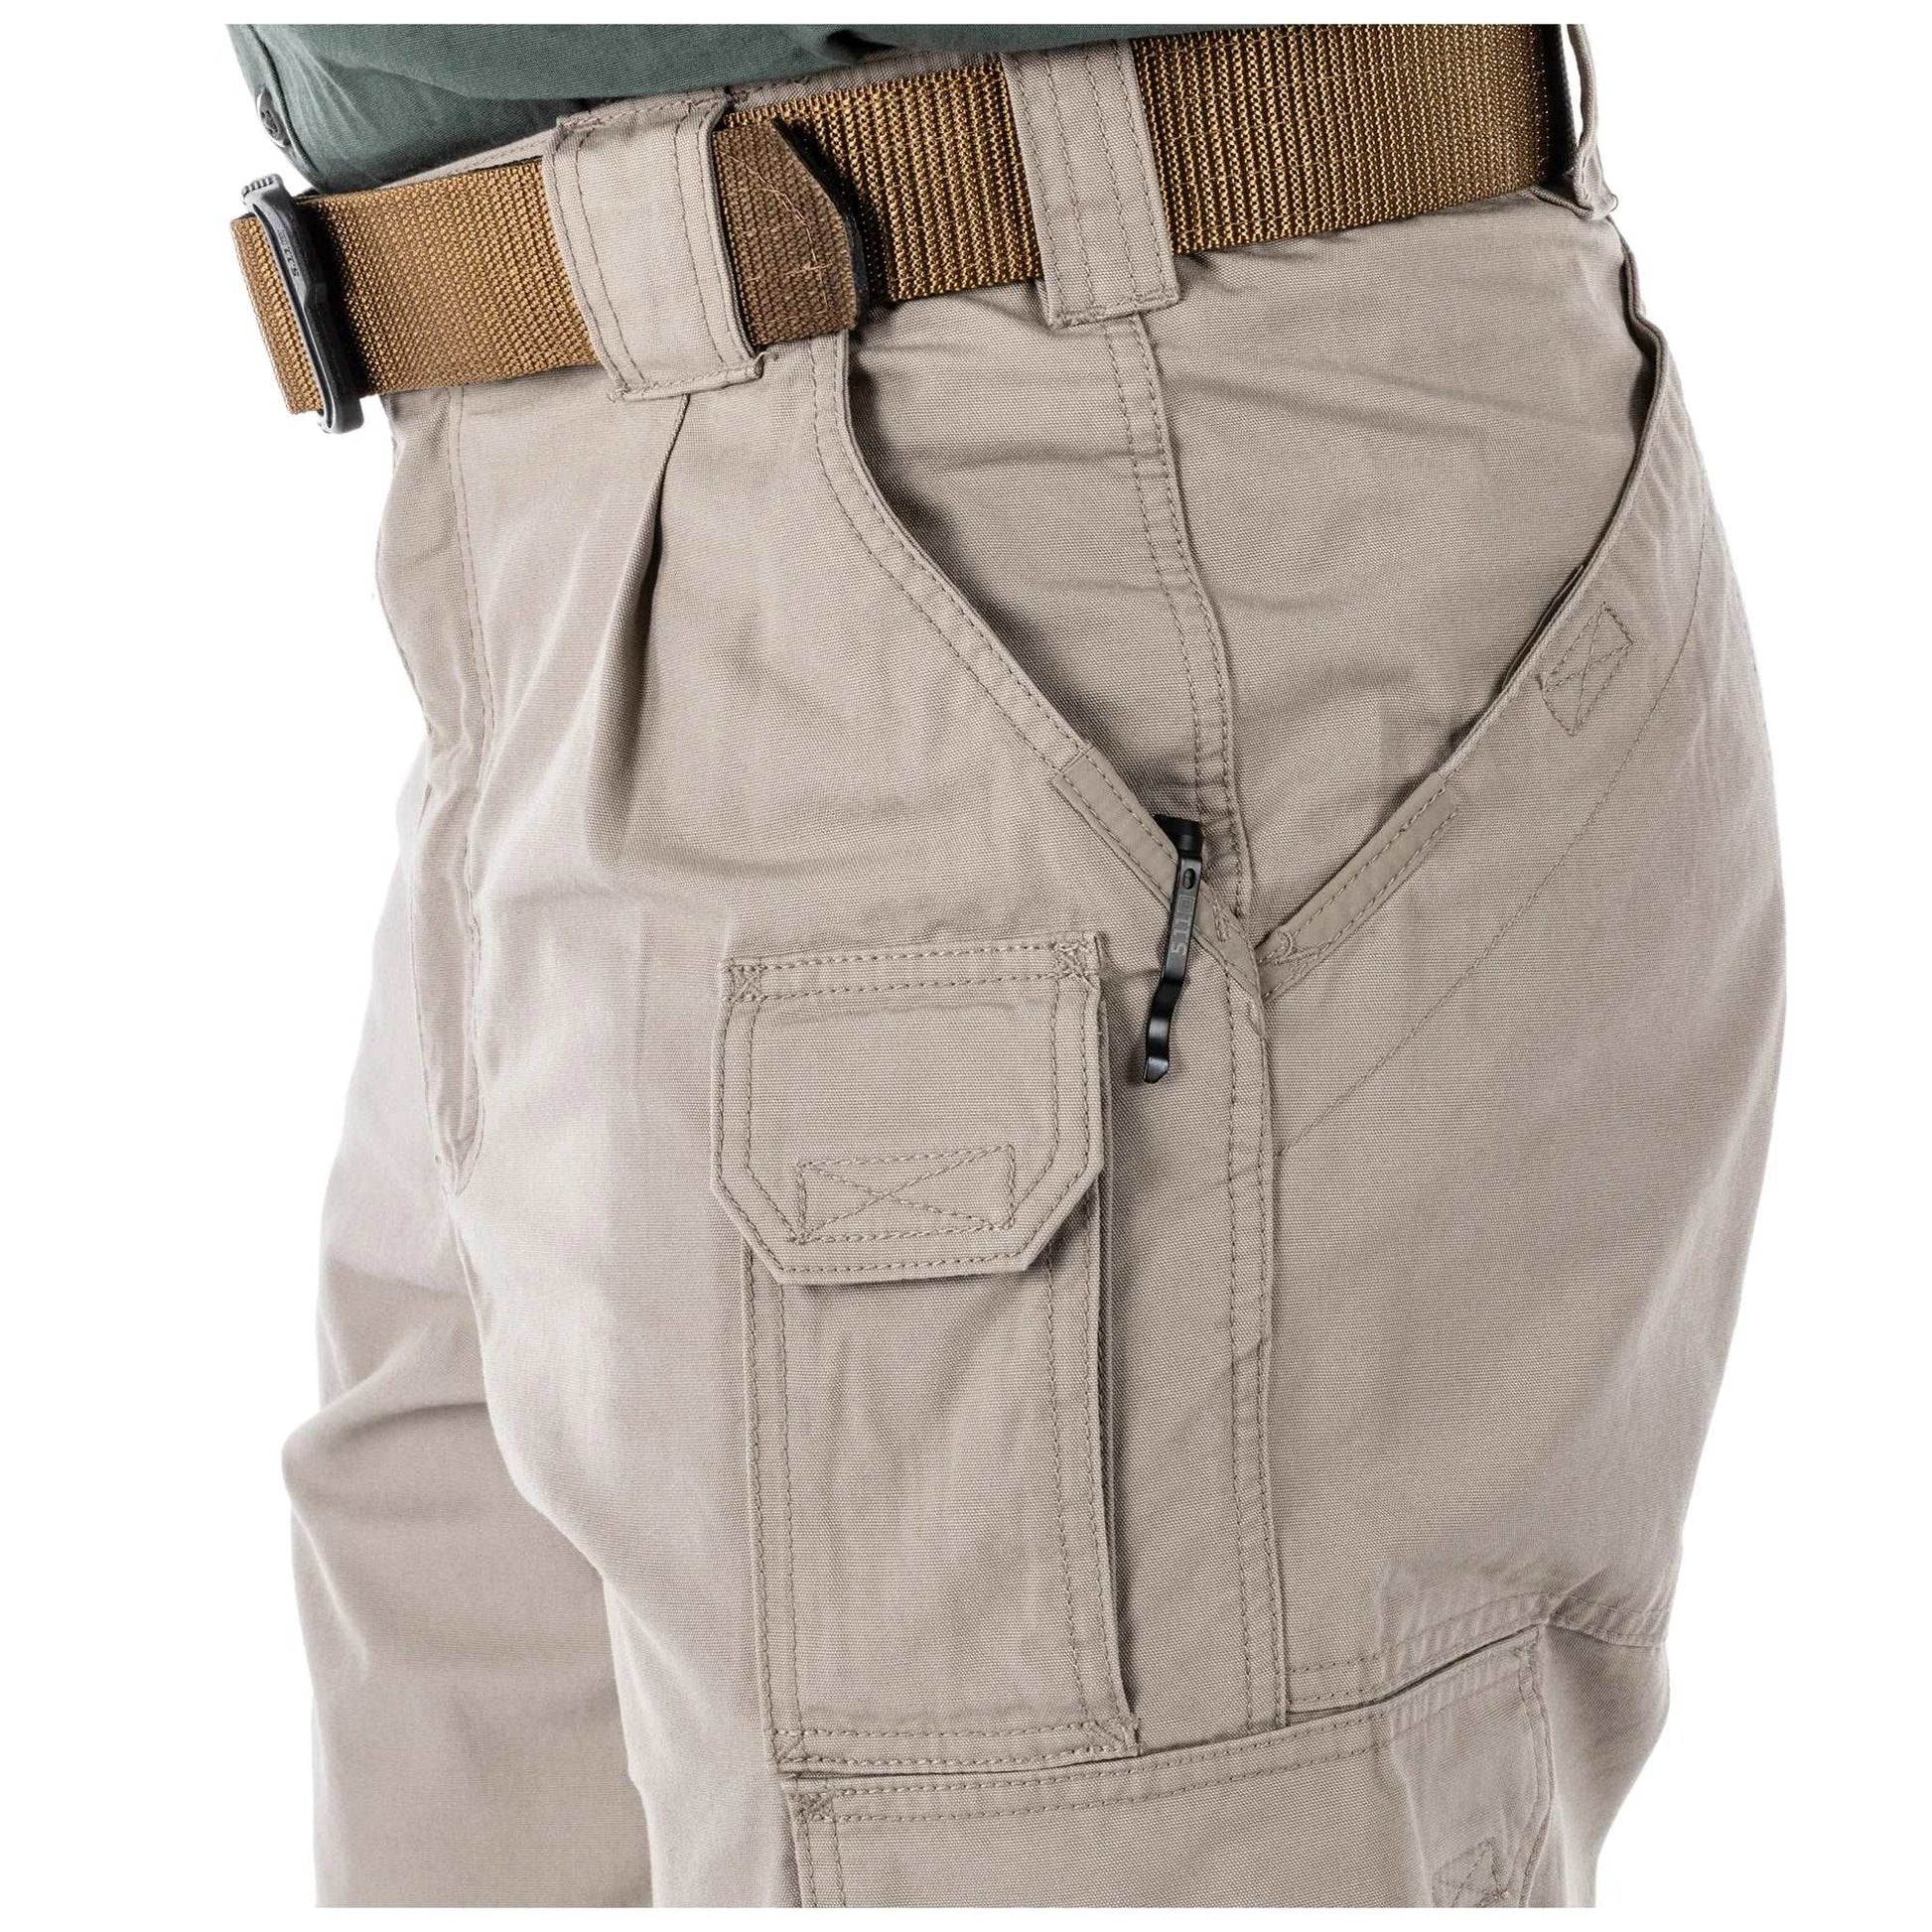 Pants - 5.11 Tactical Cotton Canvas Pants - Fire Navy